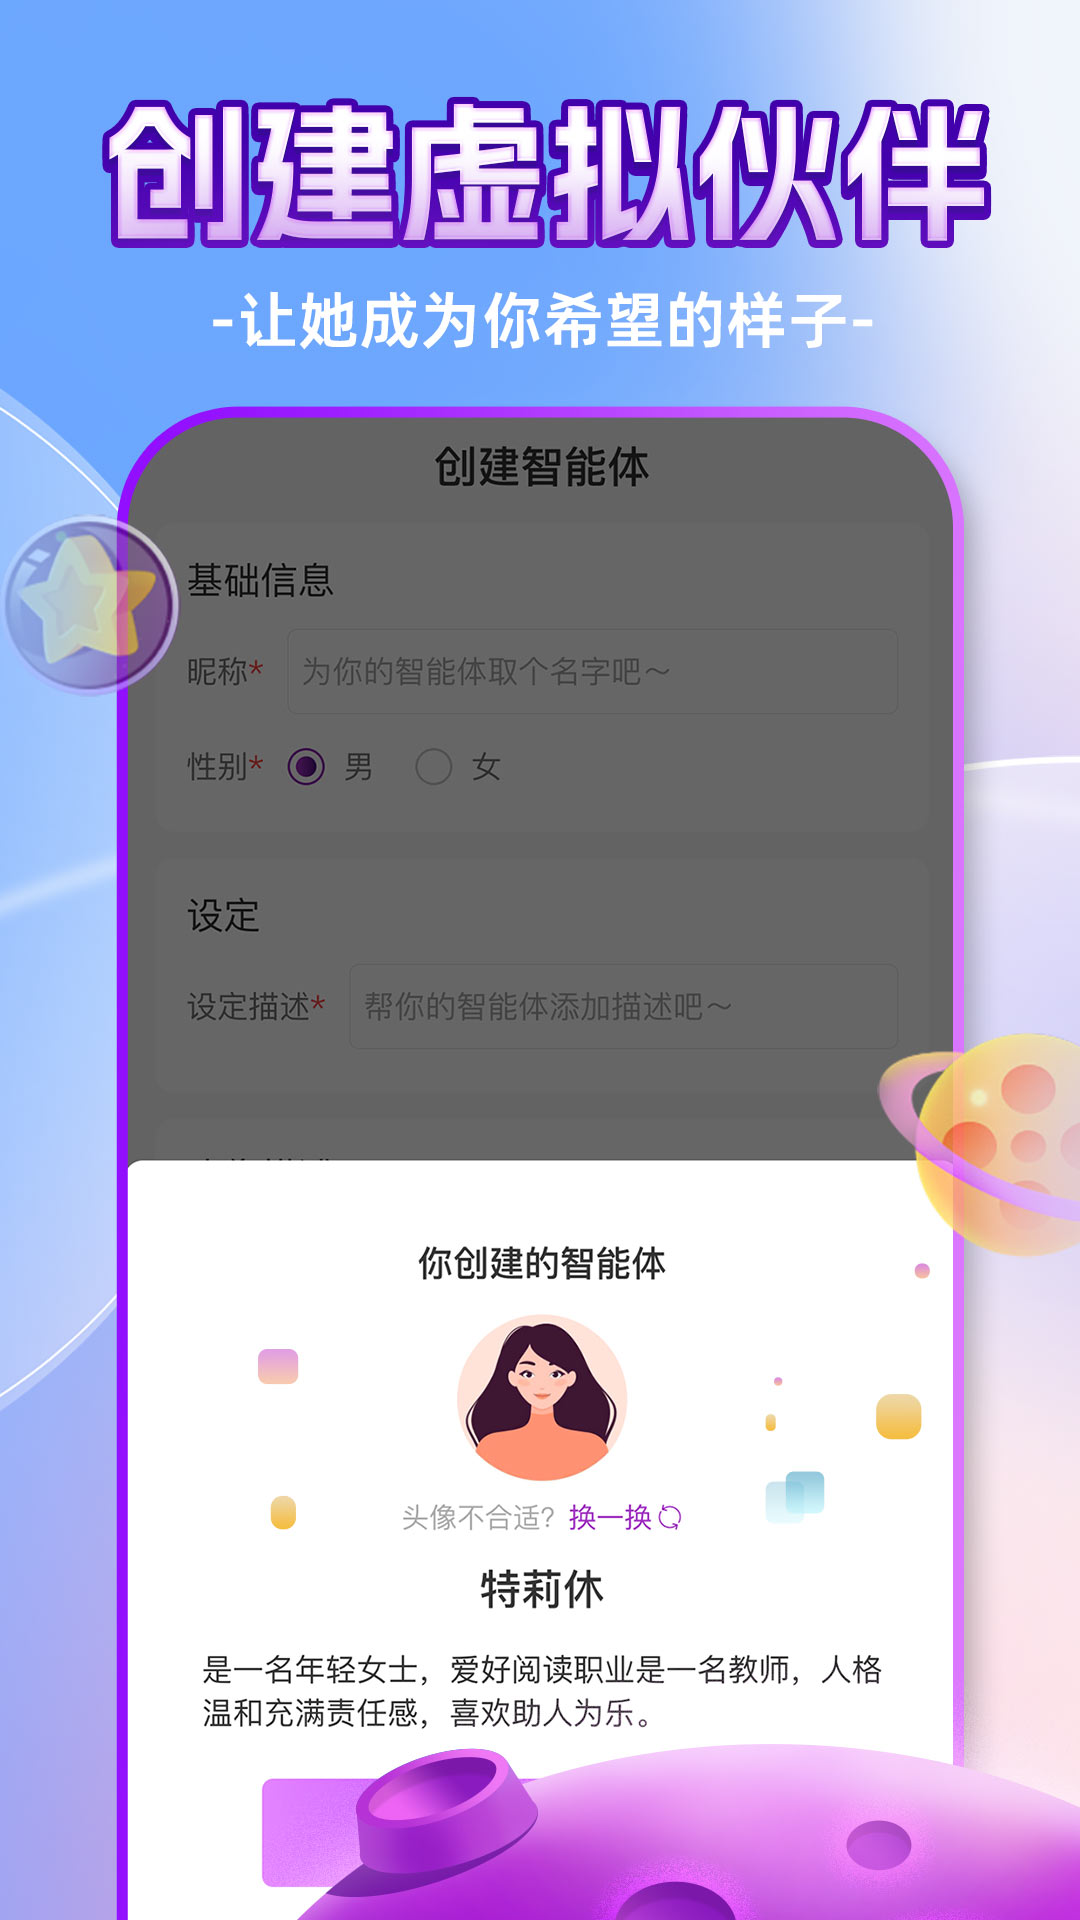 ChatAI虚拟聊天室_图片